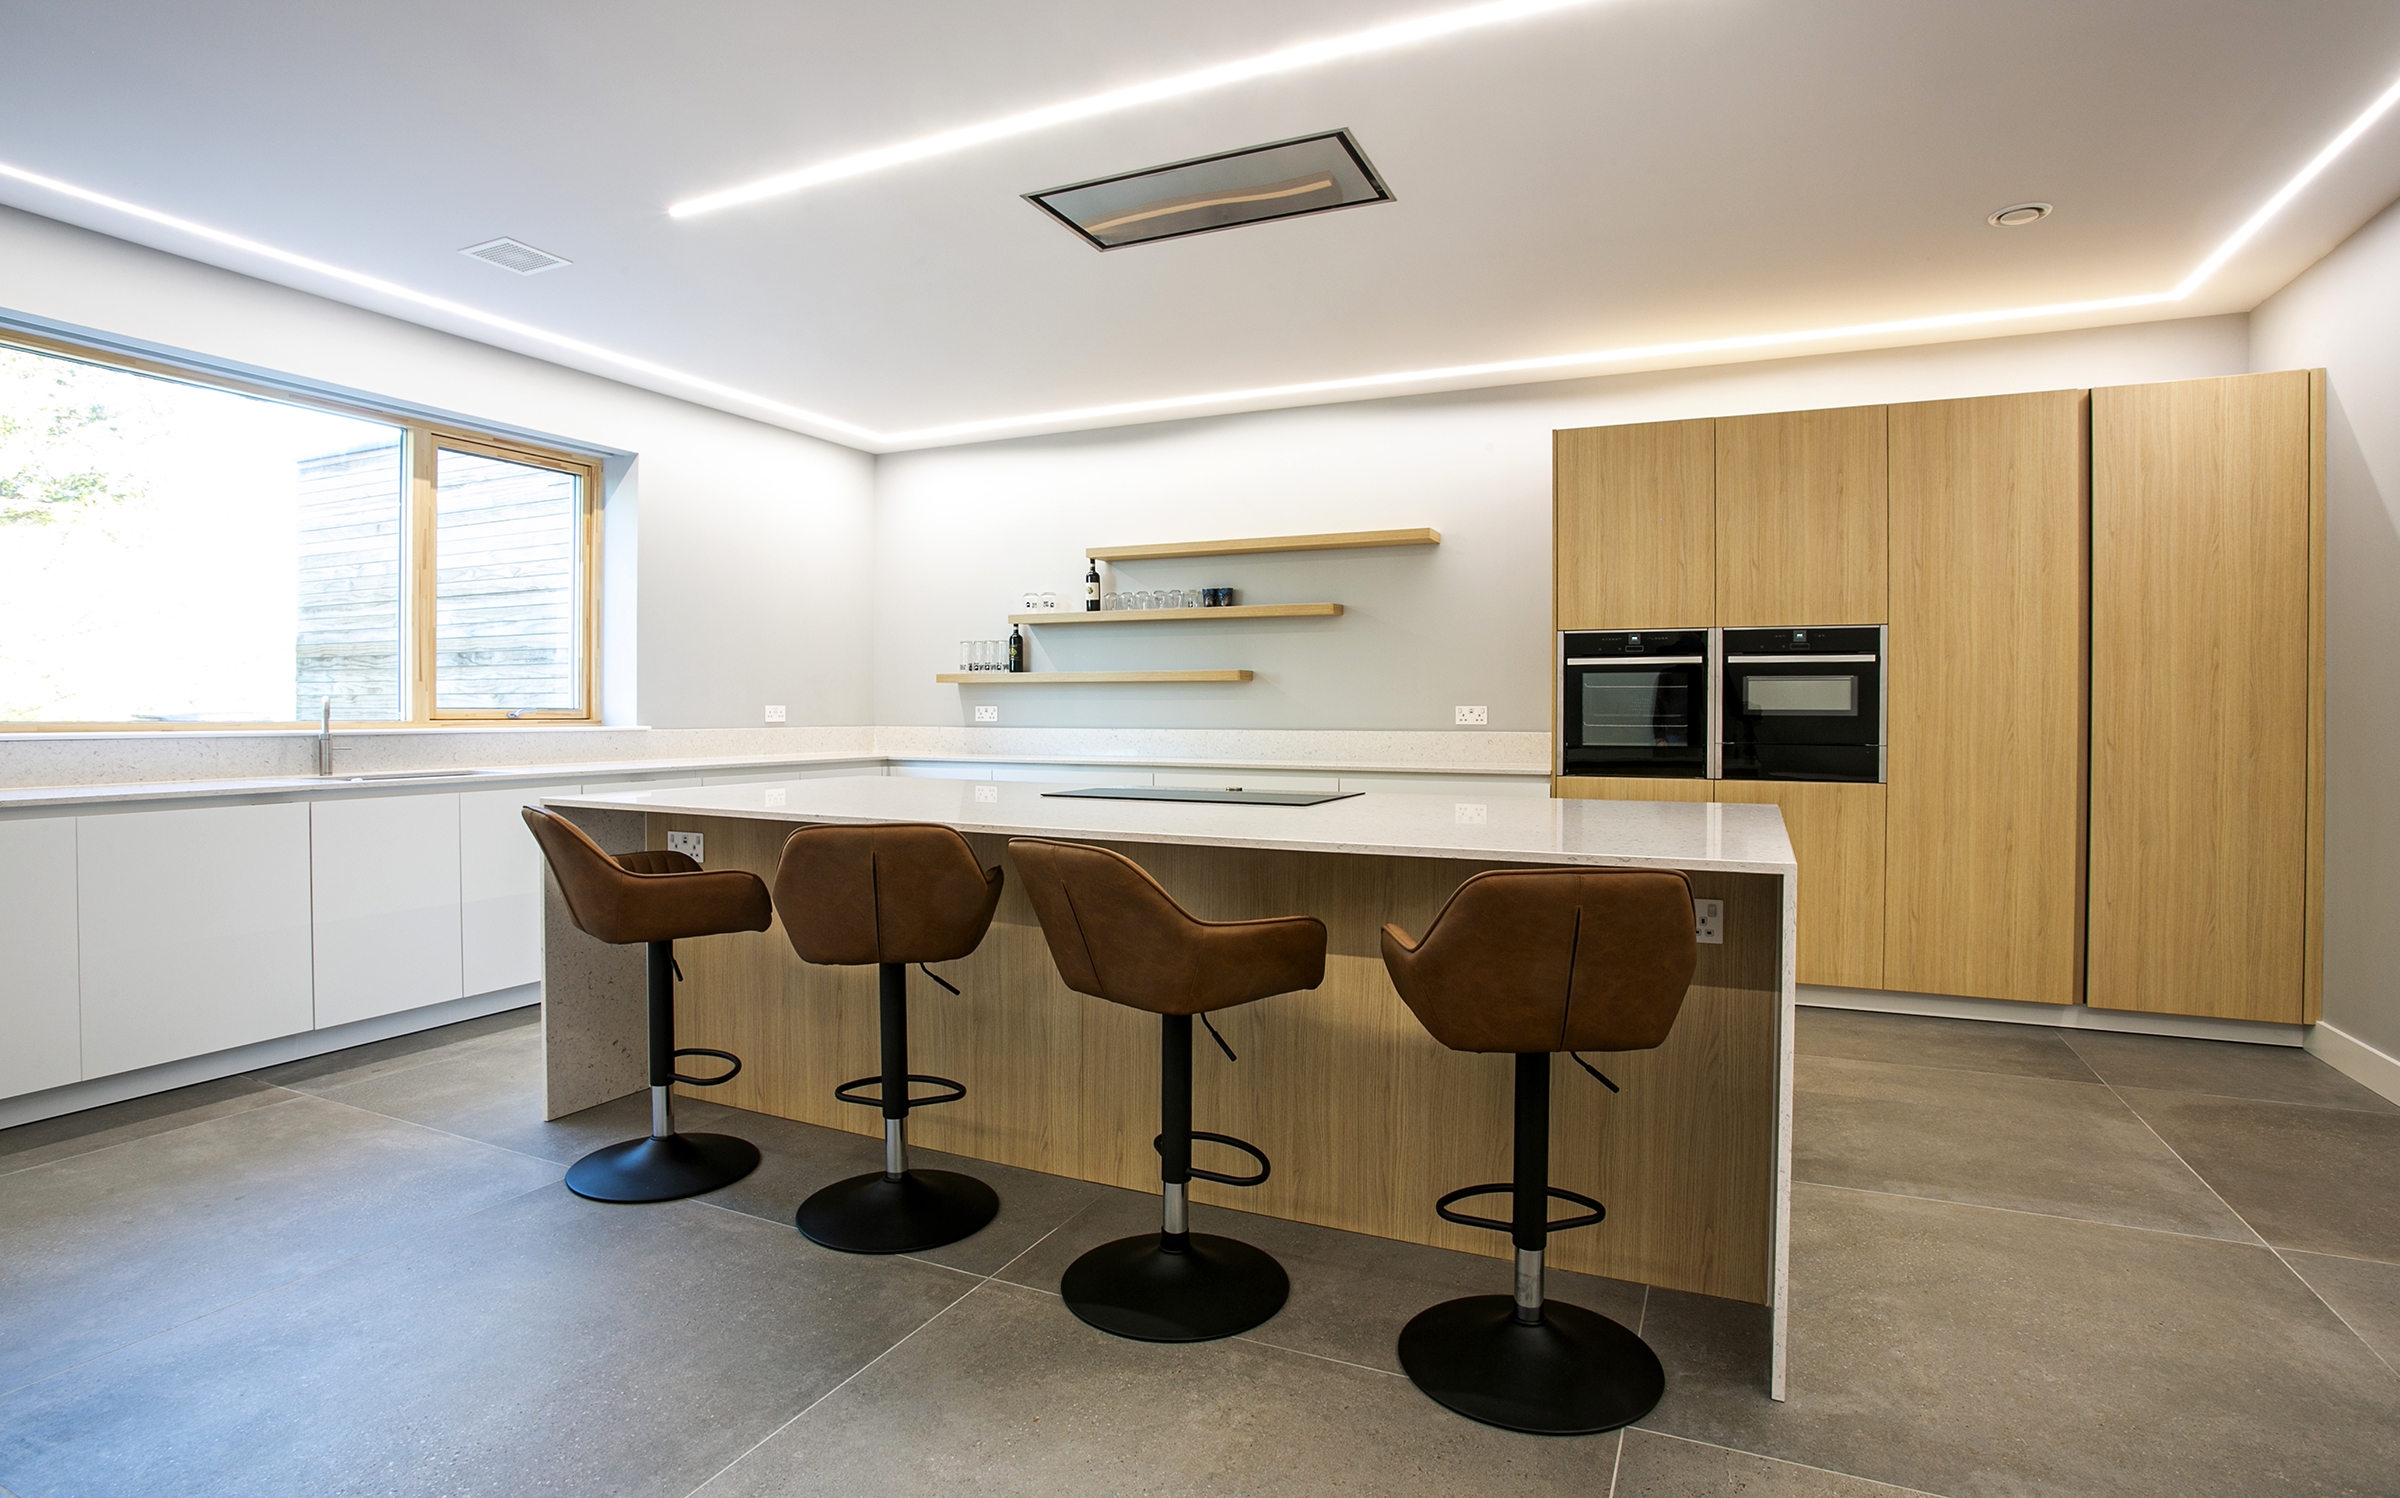 White with warm oak handless kitchen - designed by John Willox Kitchen Design